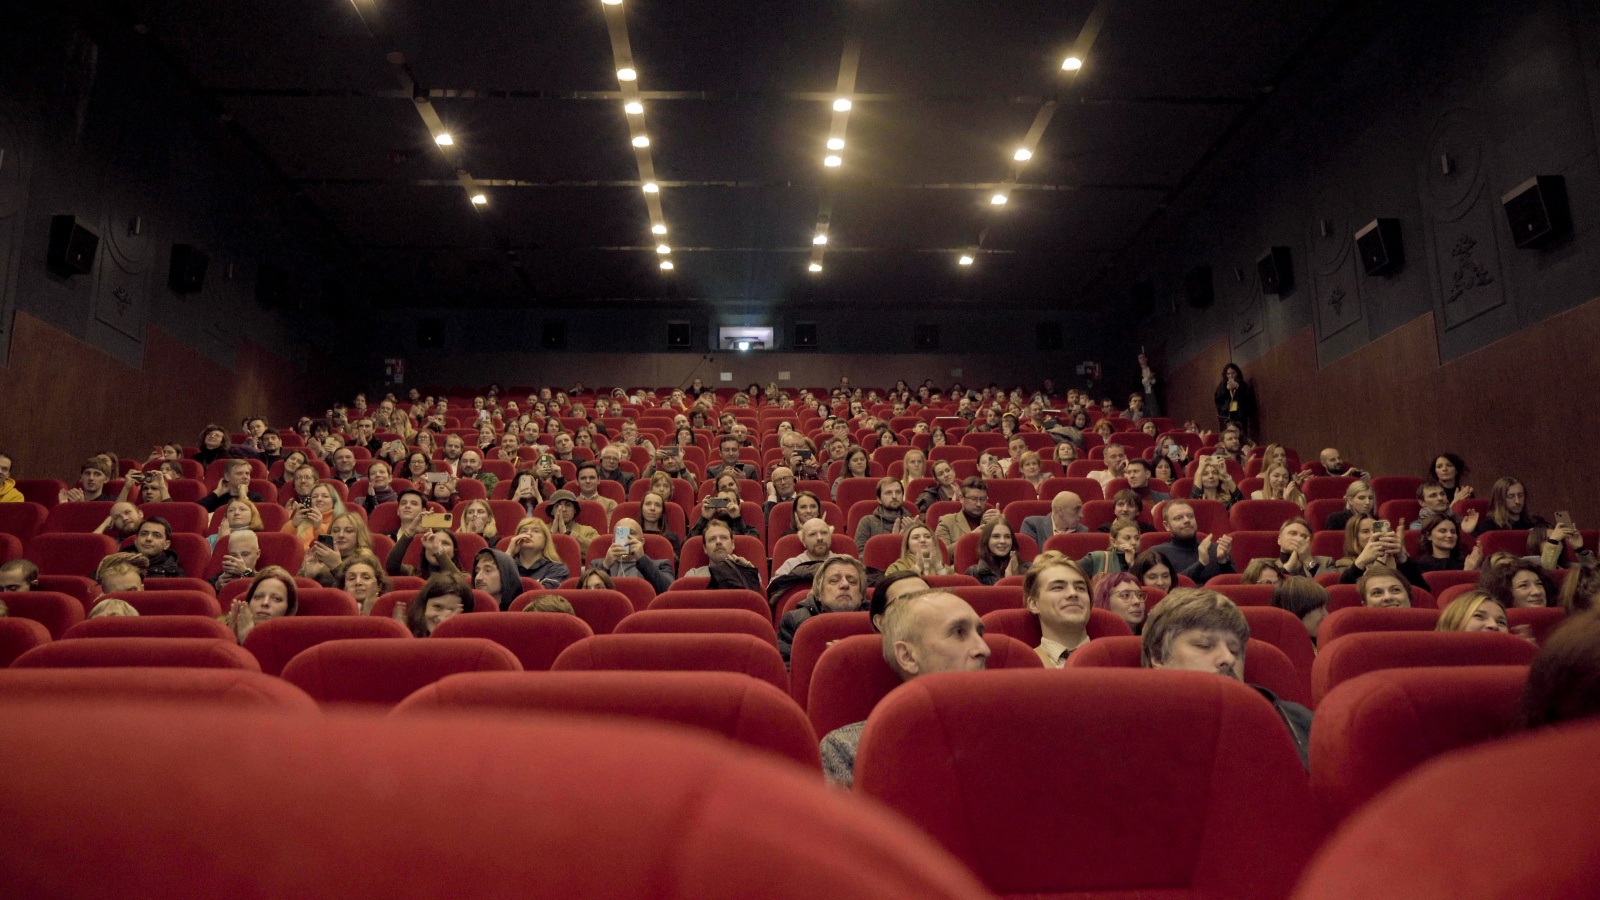 rus: Люди в кінозалі.